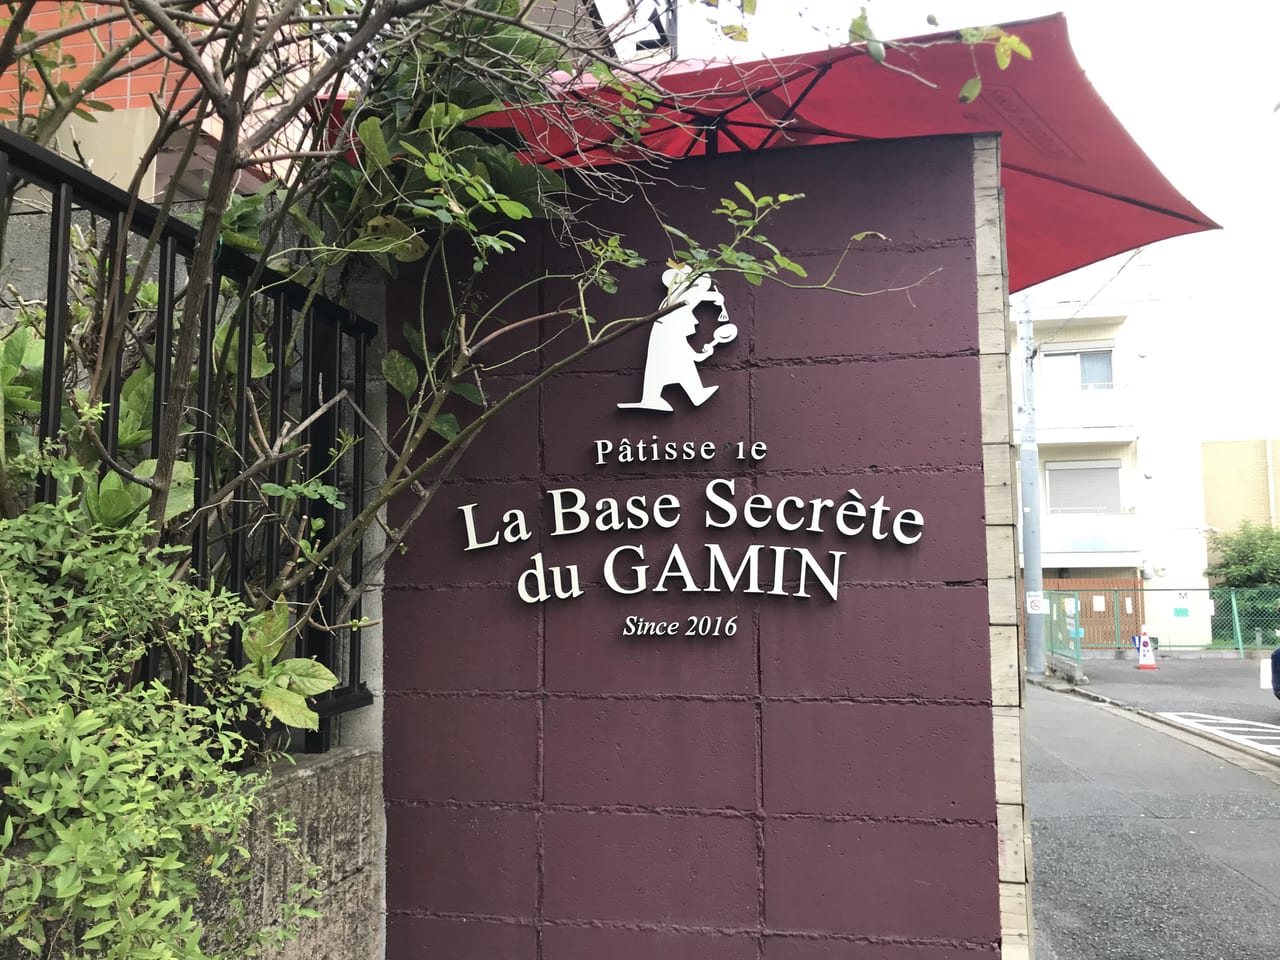 世田谷区三軒茶屋の茶沢通りの奥にパンとお菓子、シュークリーム、ケーキなどレストラン発の品揃え「La Base Secrète du GAMIN / ラ バーズ スクレート ドウ ギャマン」はあります。